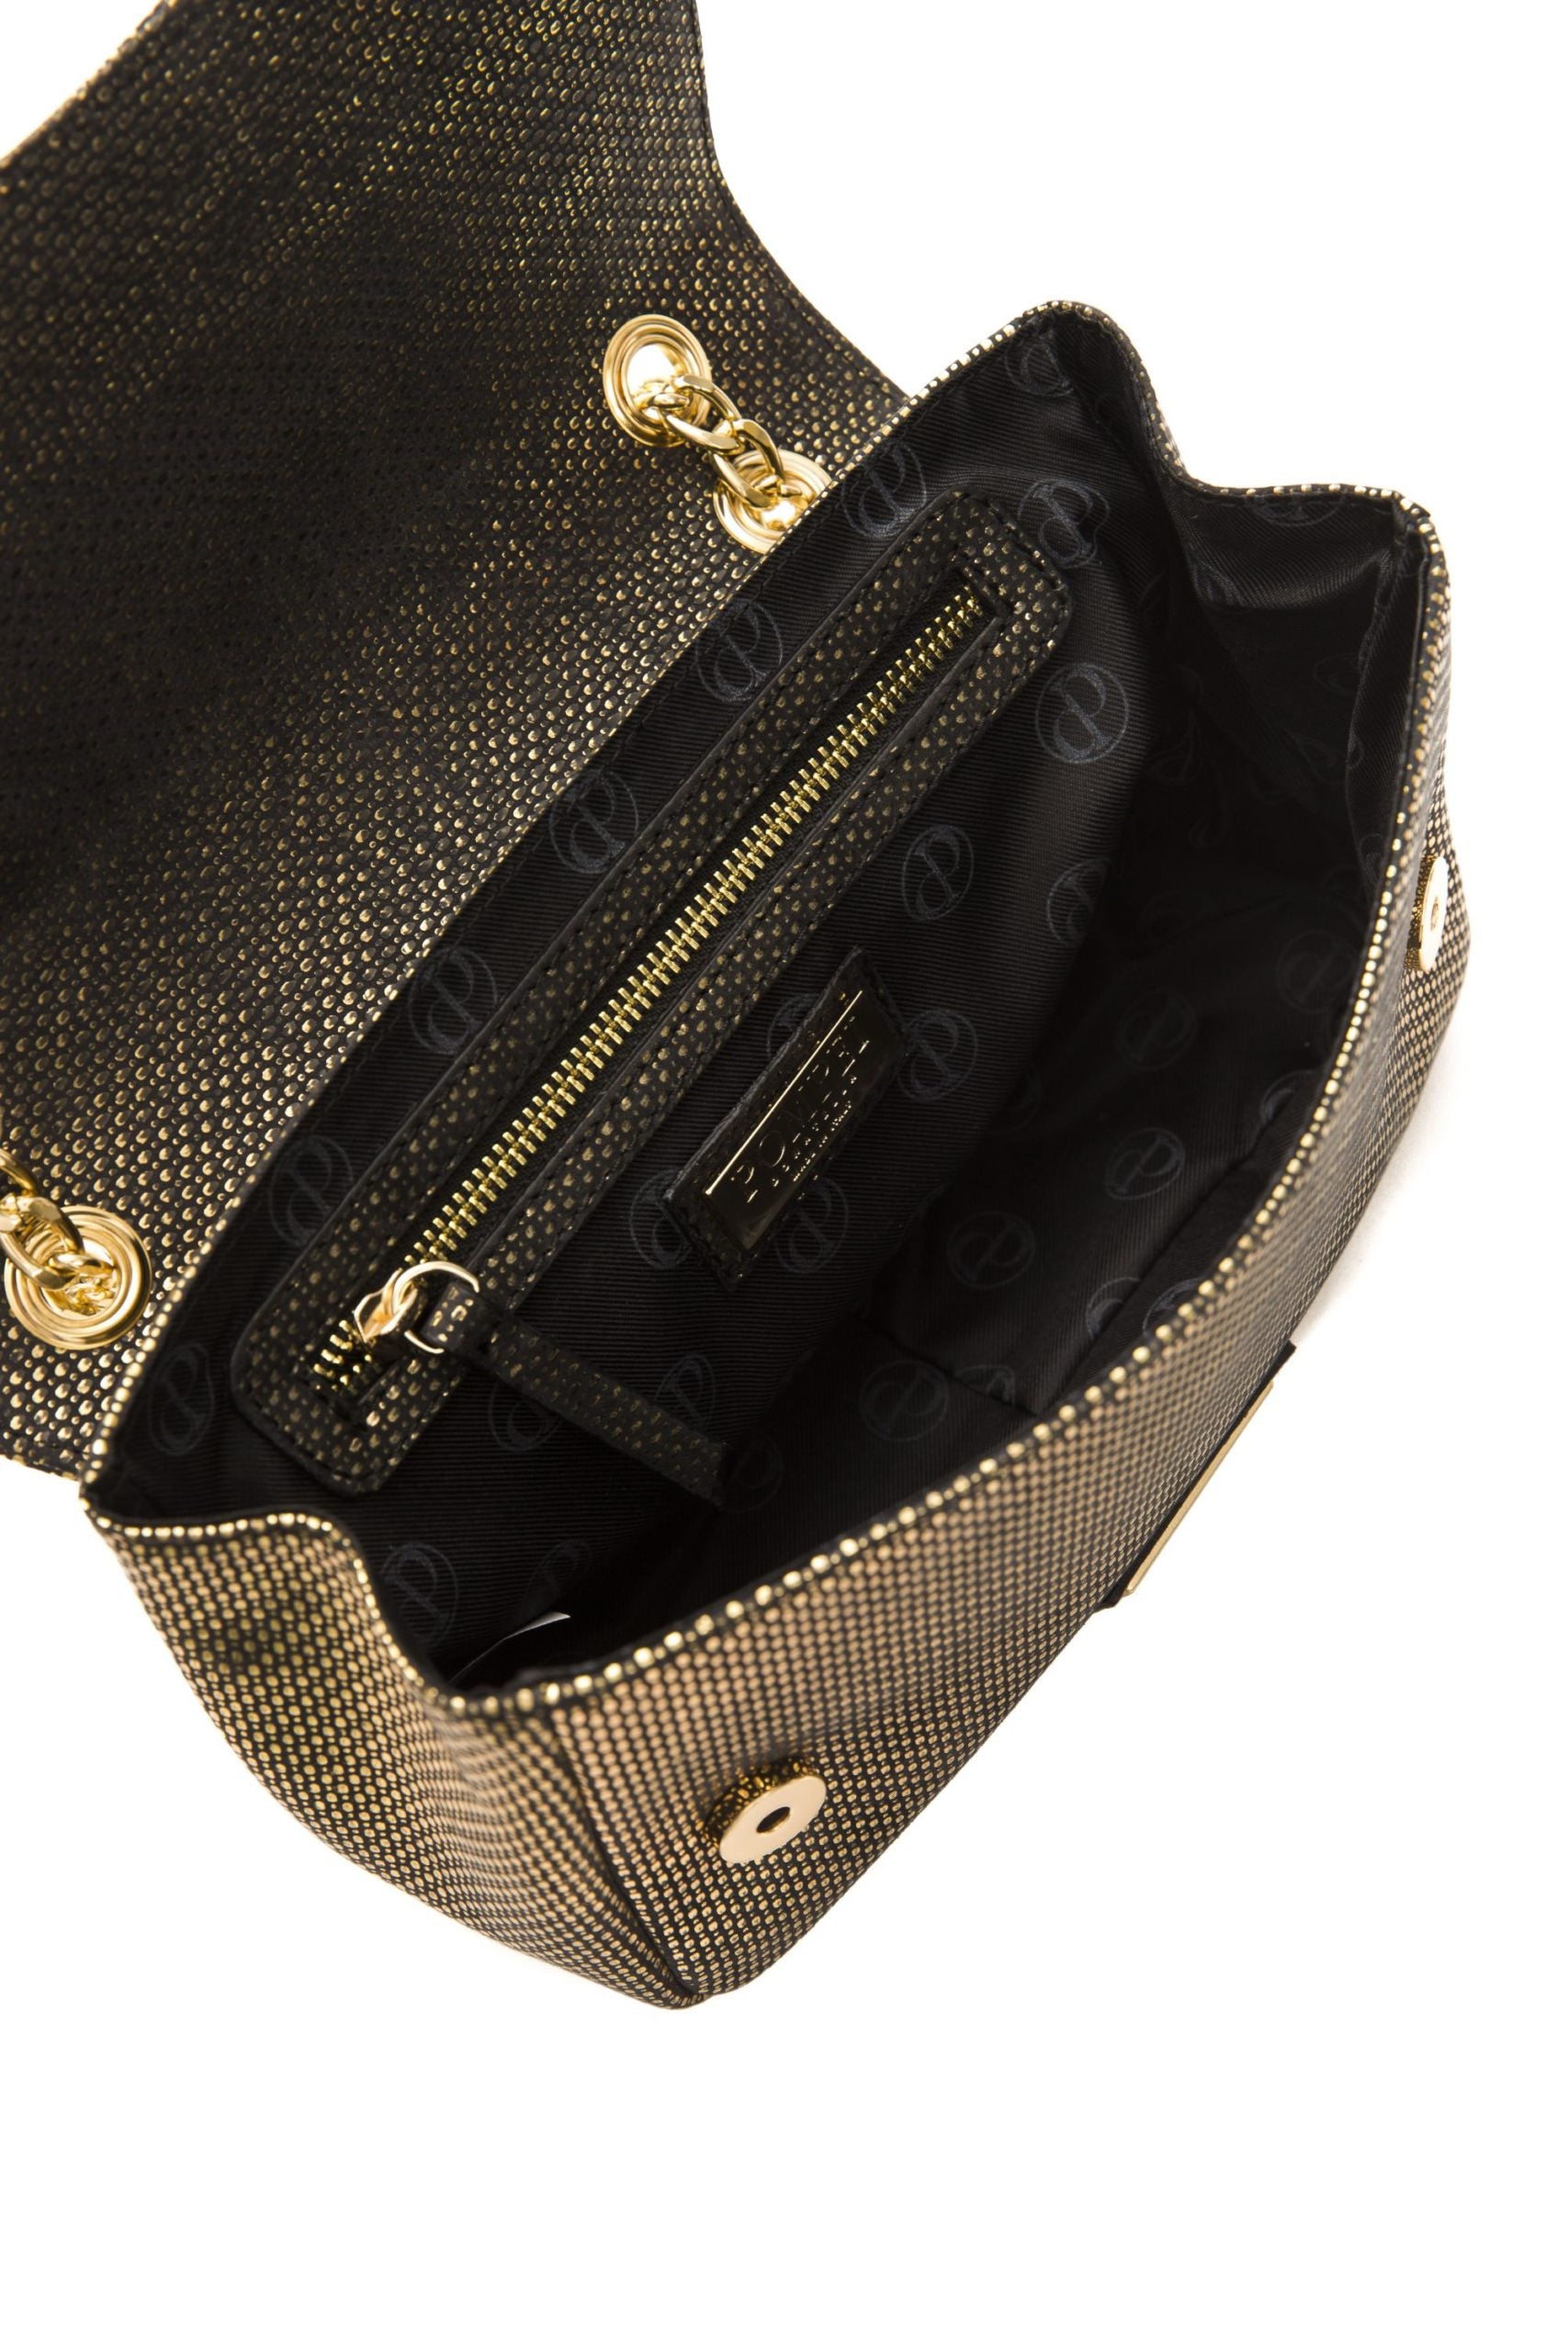 Buy Elegant Leather Crossbody Elegance by Pompei Donatella